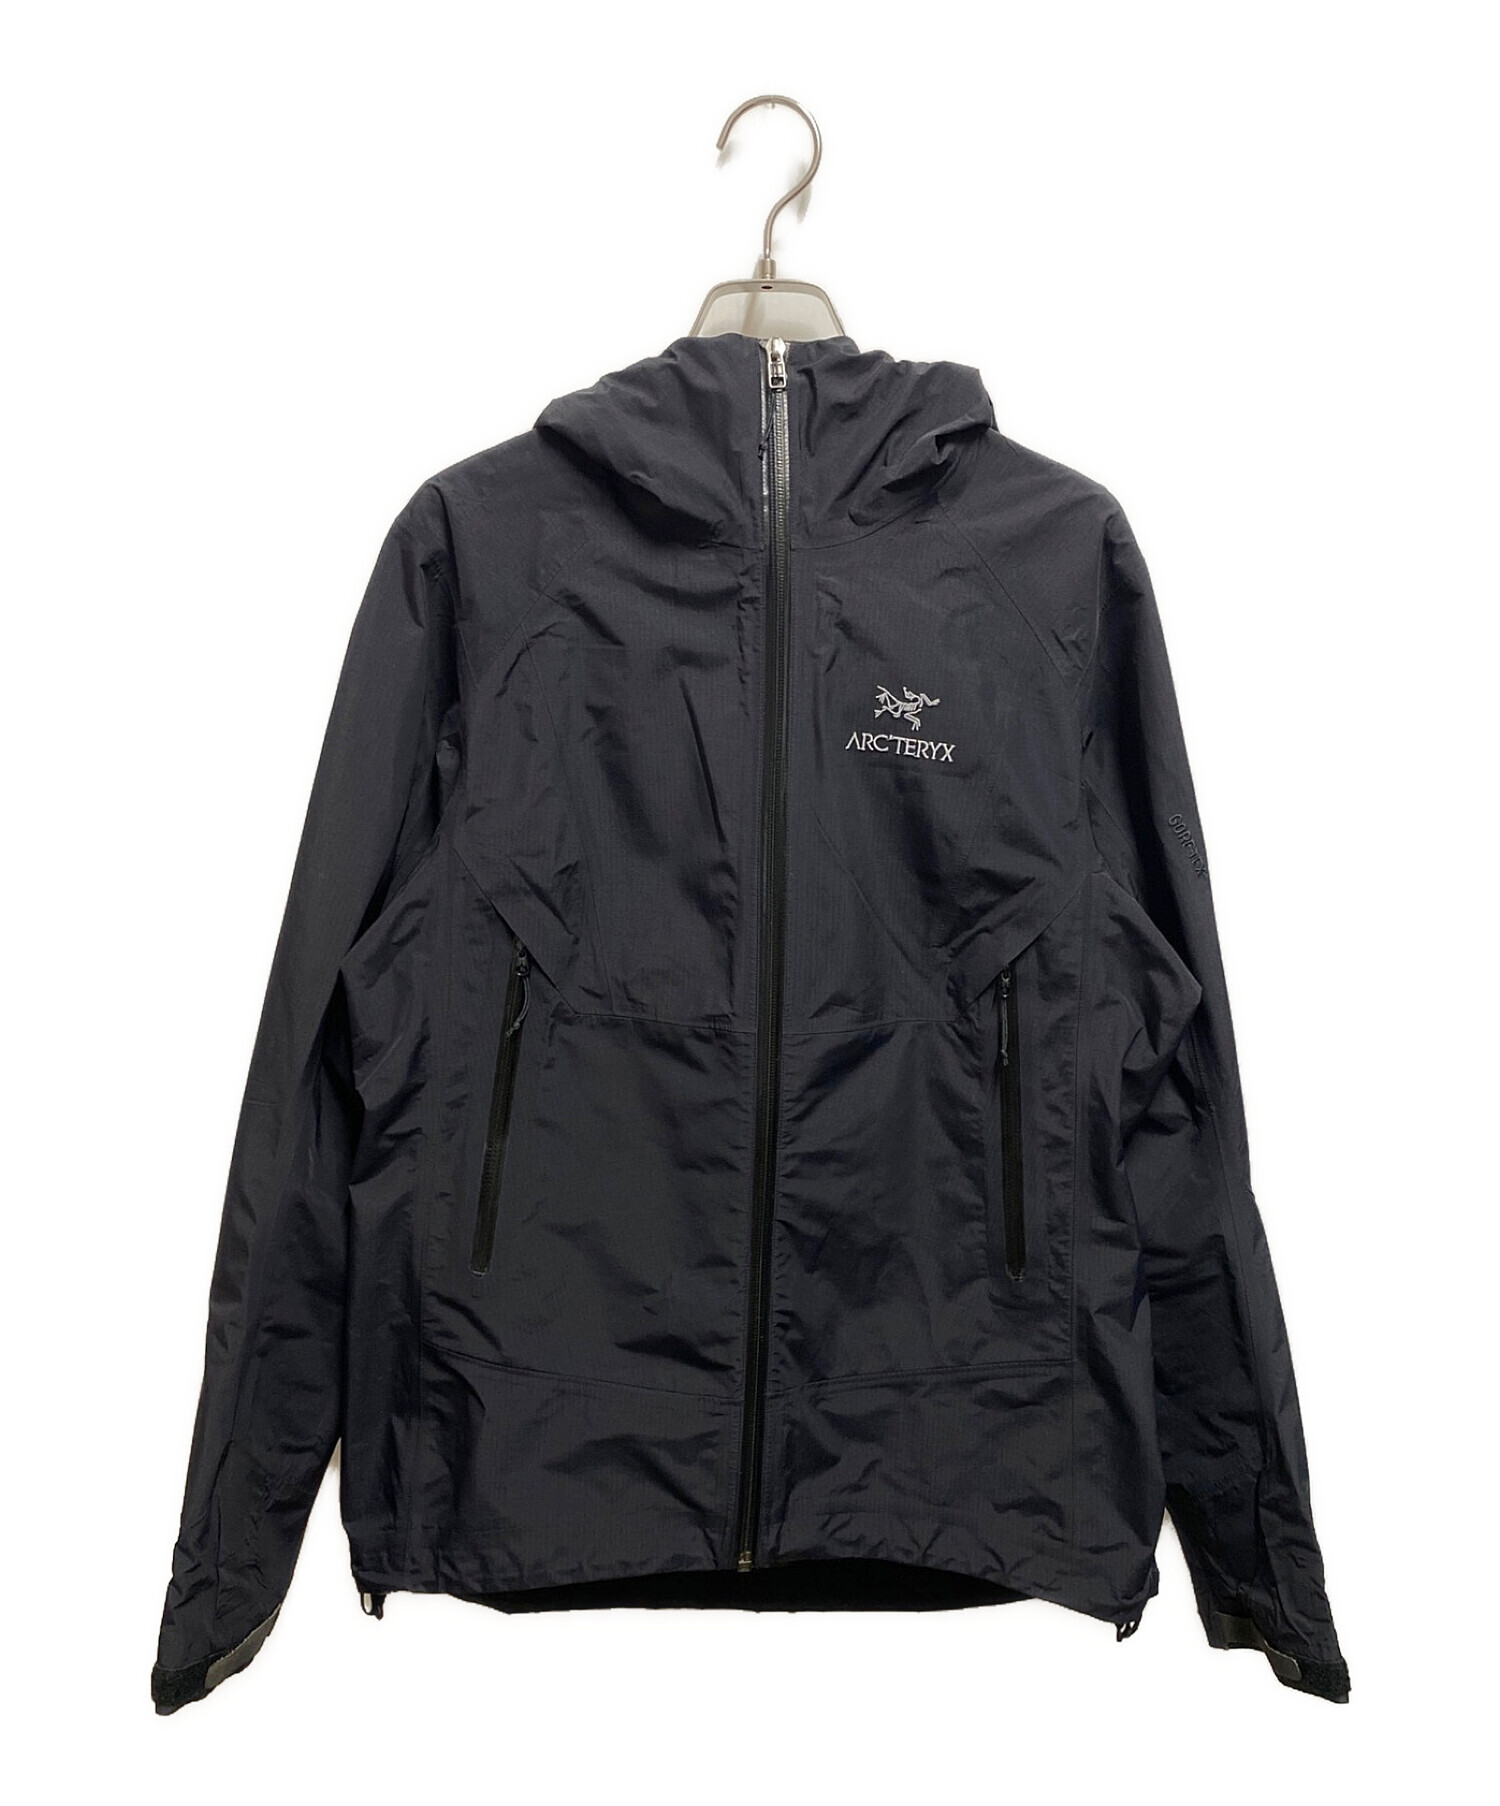 19,350円アークテリクス beta SL jacket